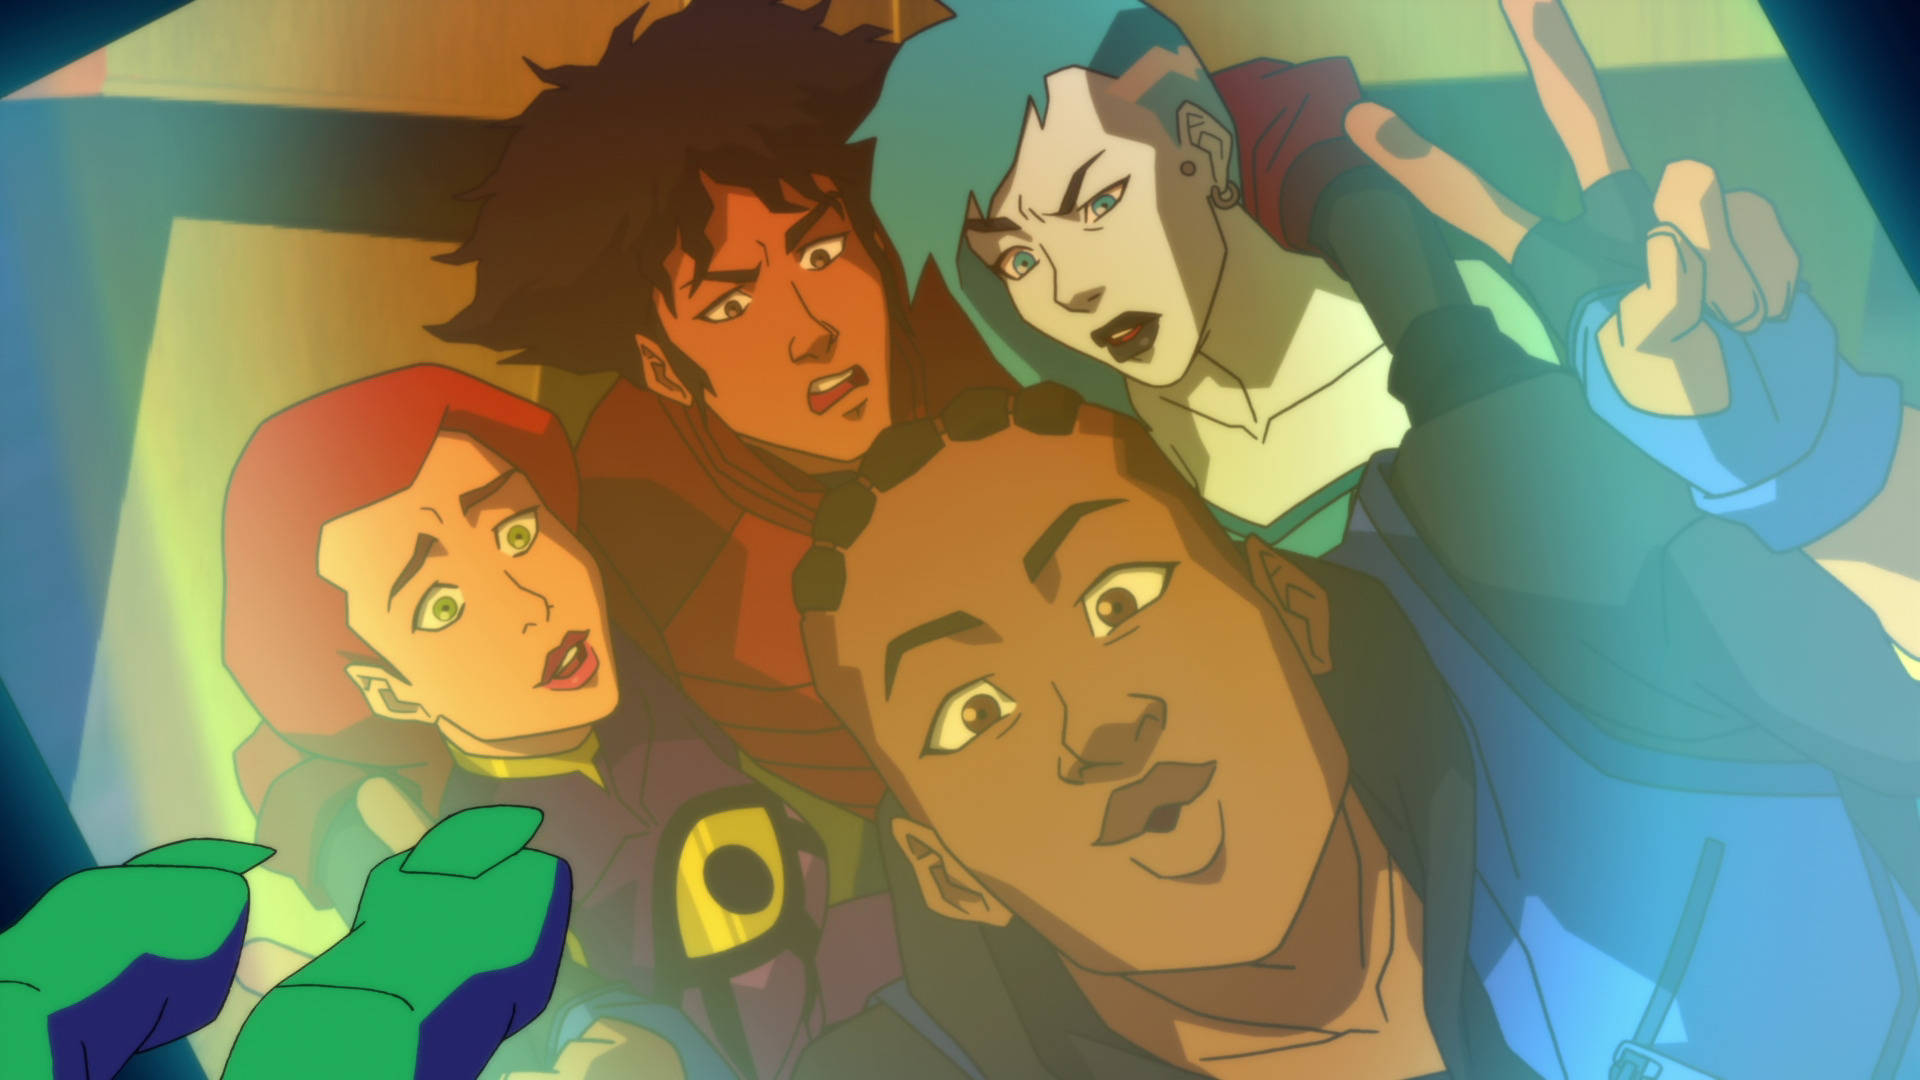 Young Justice Cast Selfie Tapet: Se et selfieskud af Justice Leagues ungdomsgruppe. Wallpaper